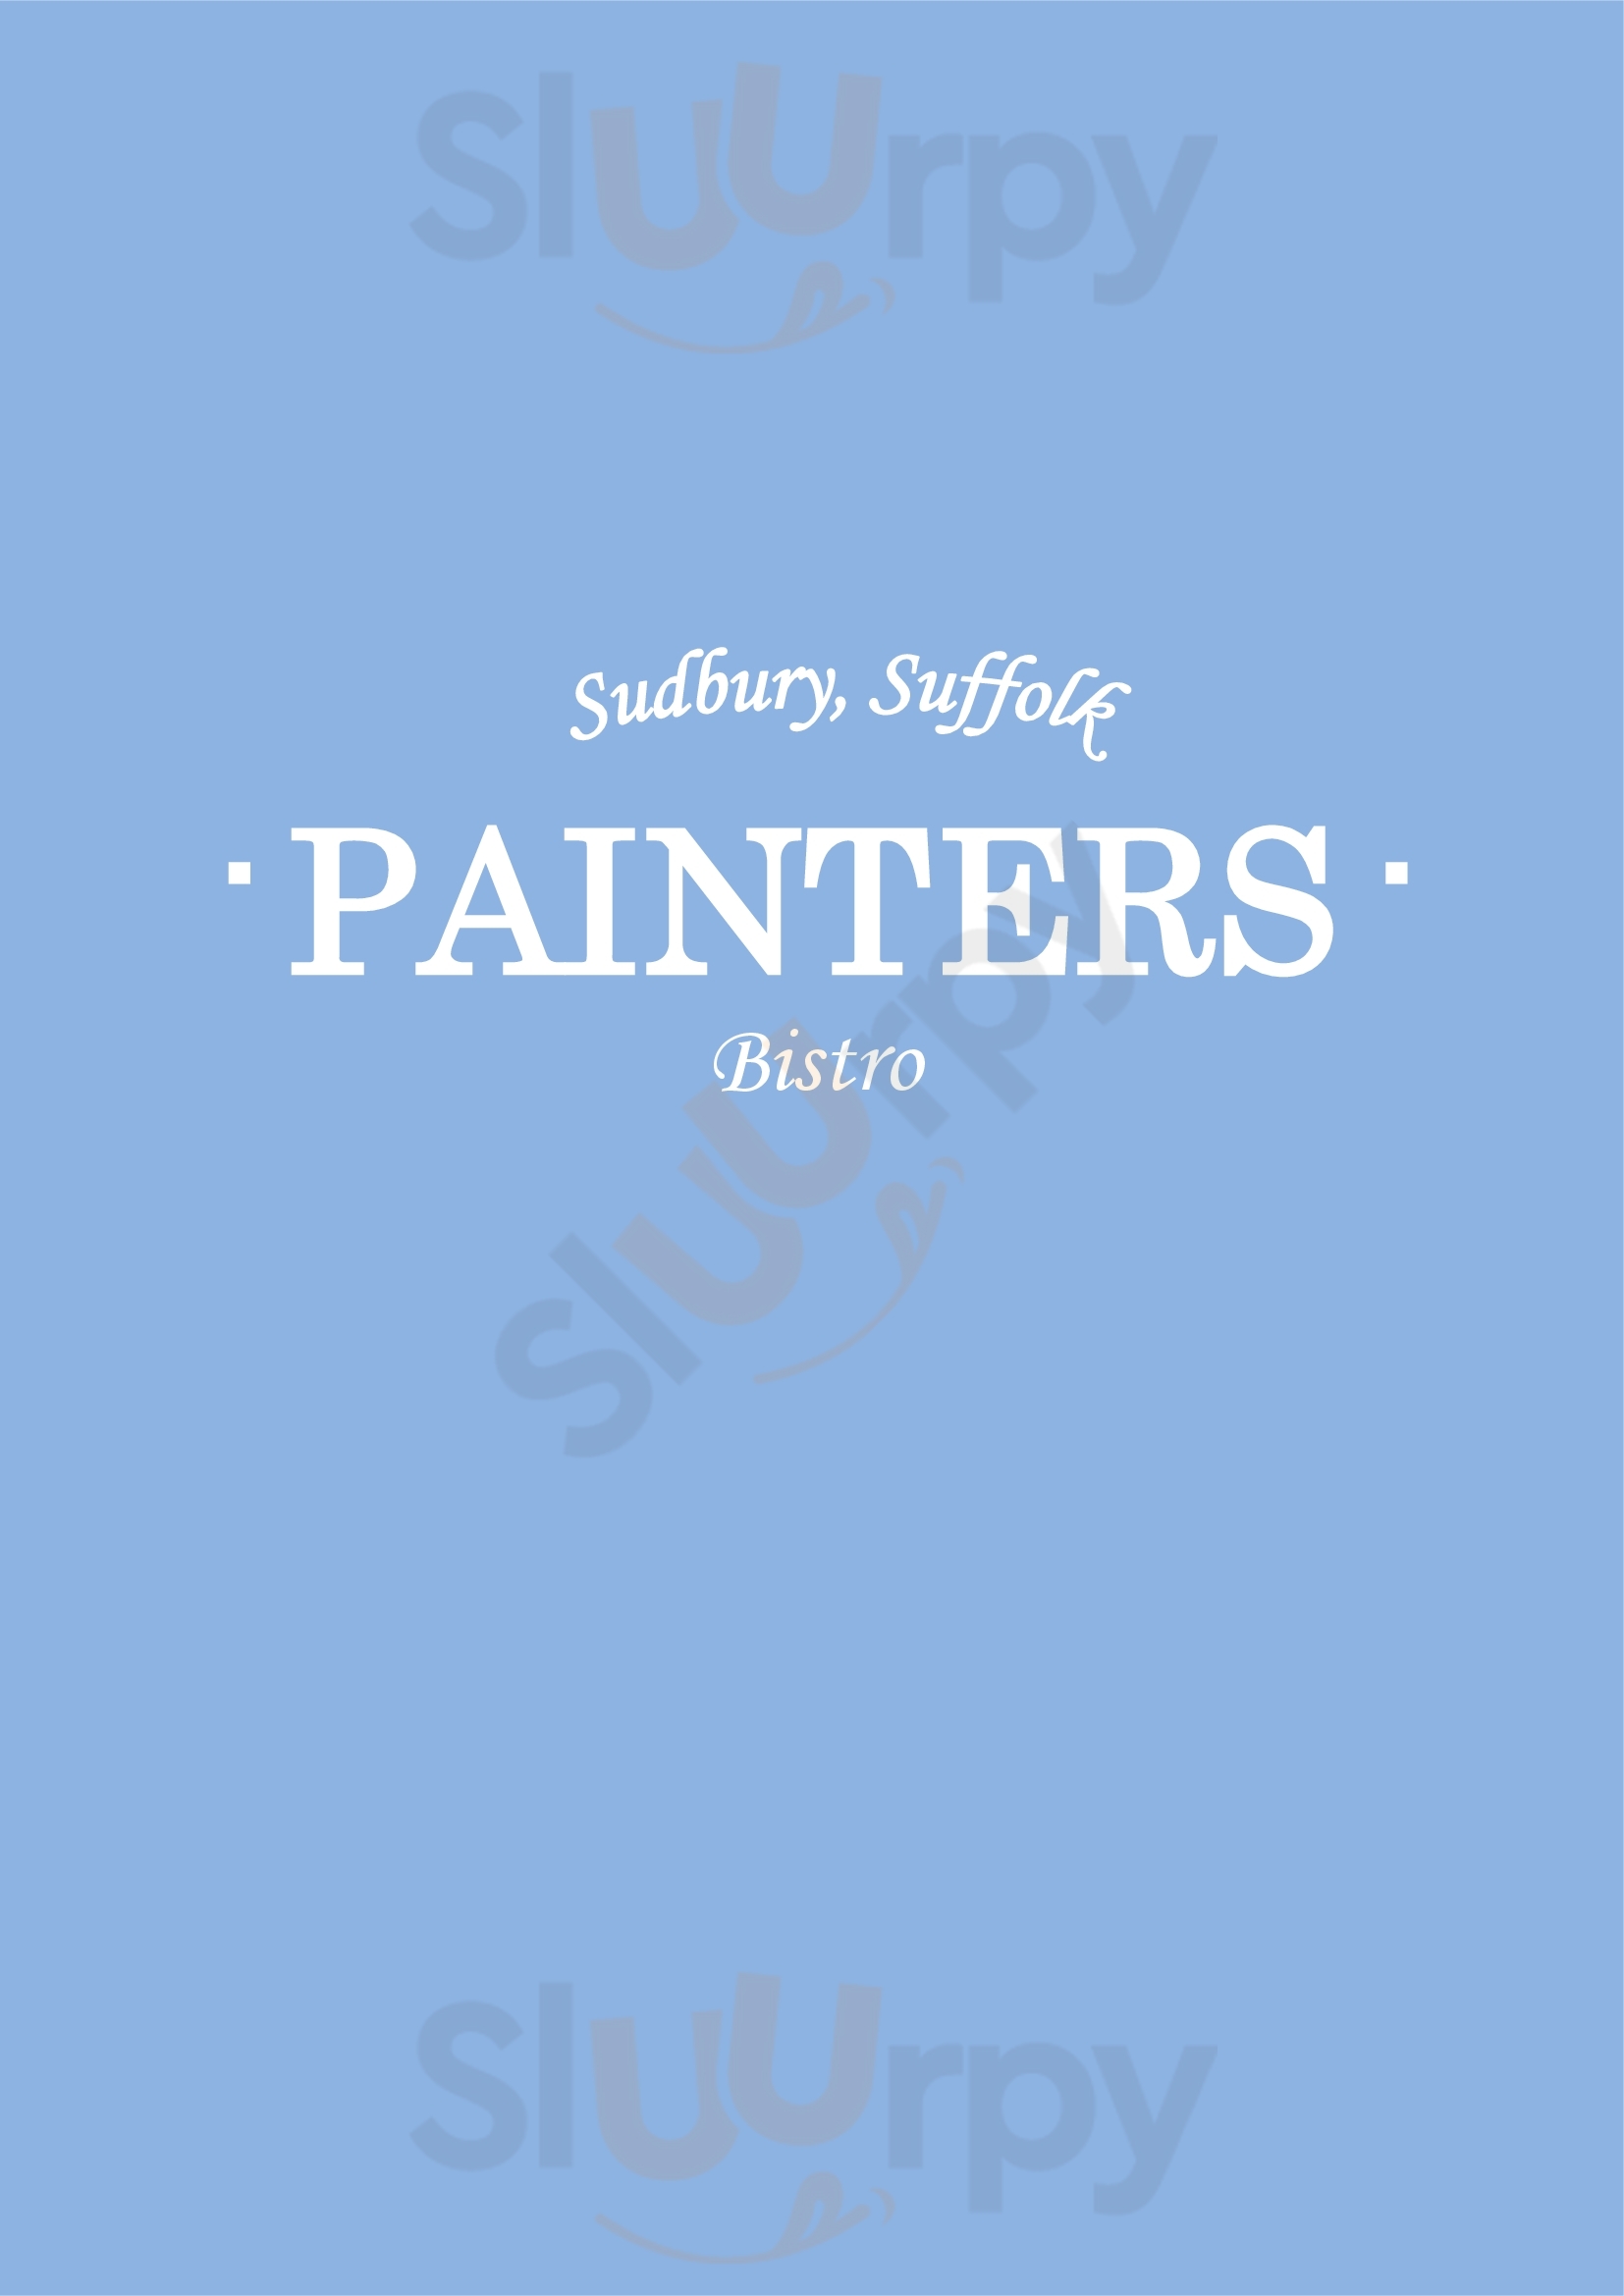 Painters Cafe - Sudbury Sudbury Menu - 1